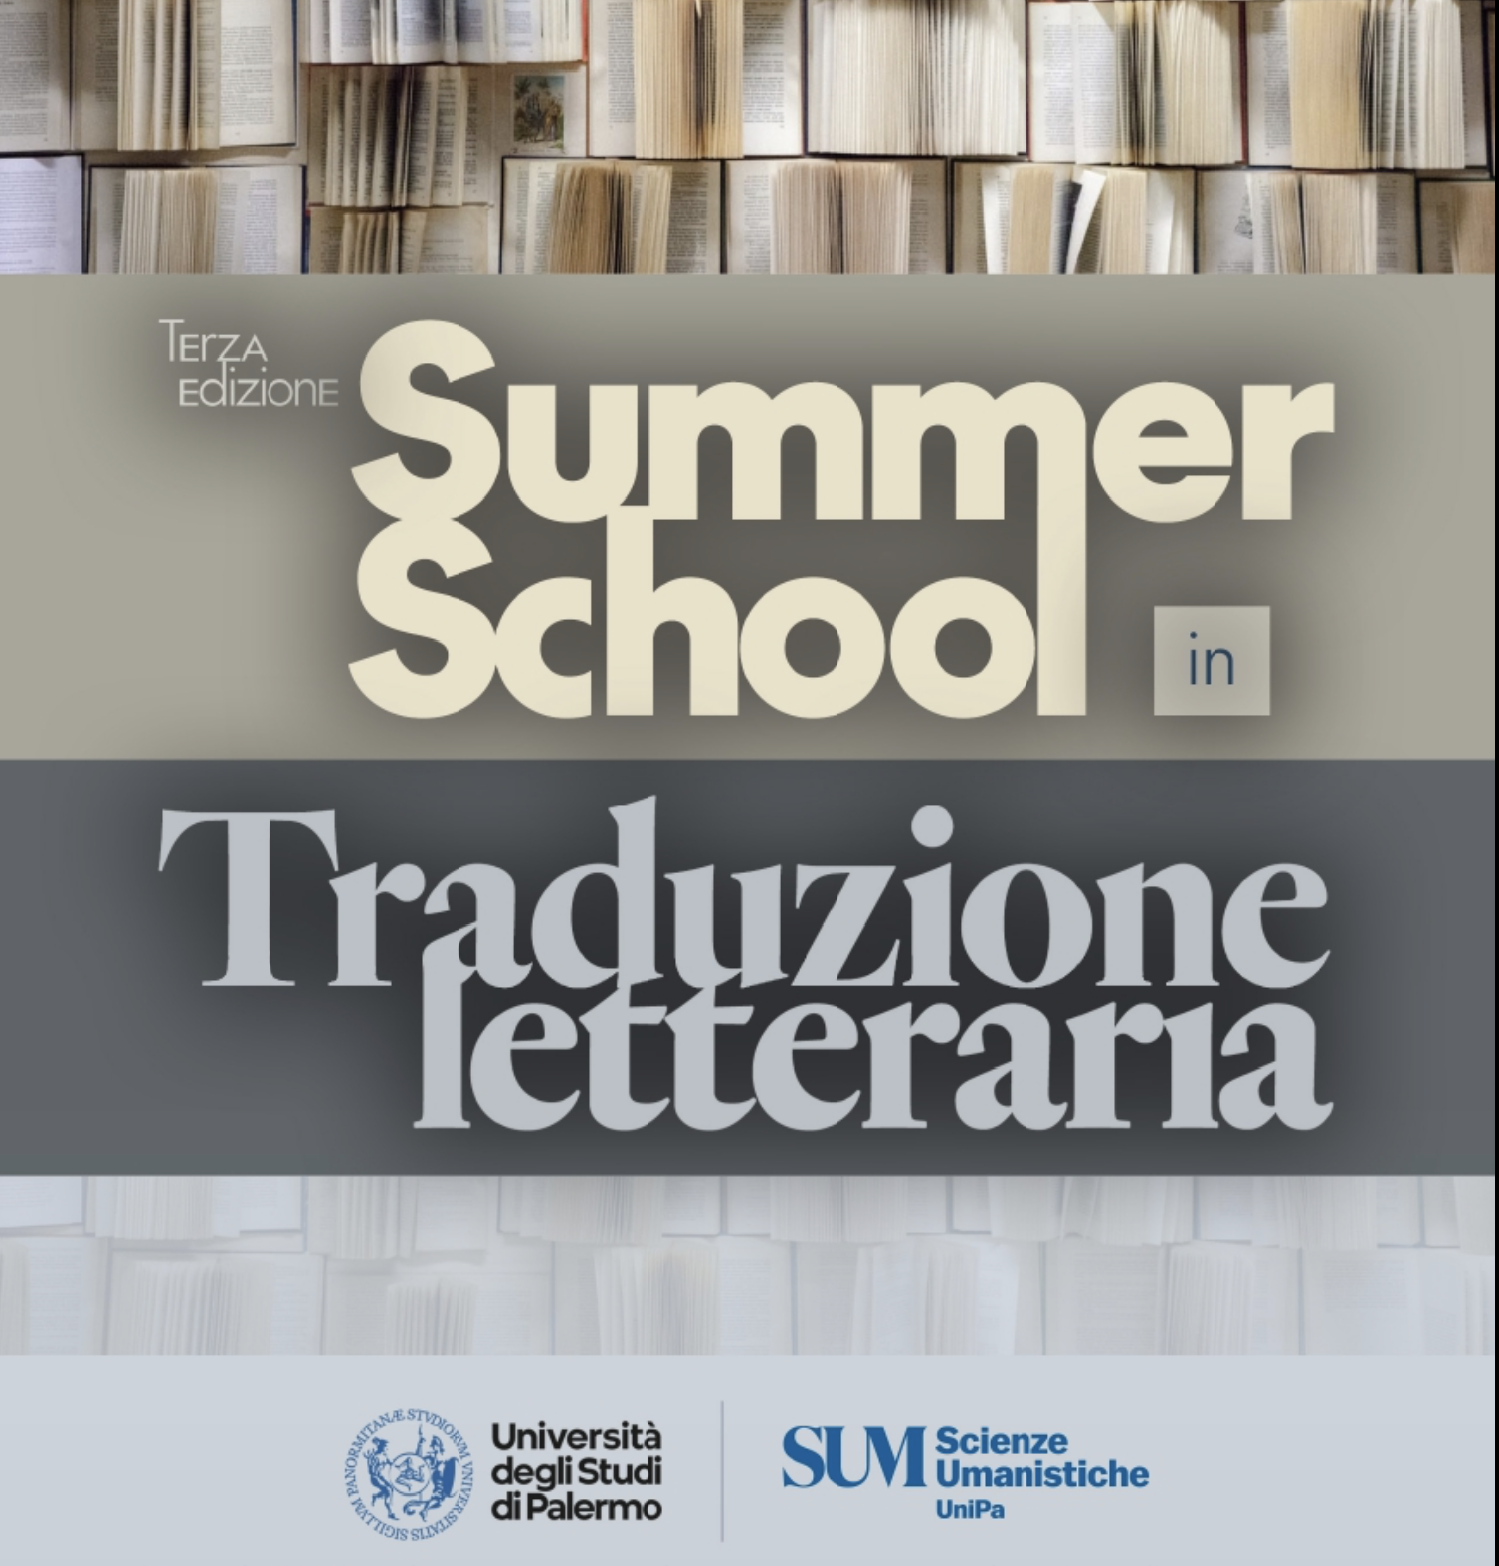 Summer School in Traduzione letteraria